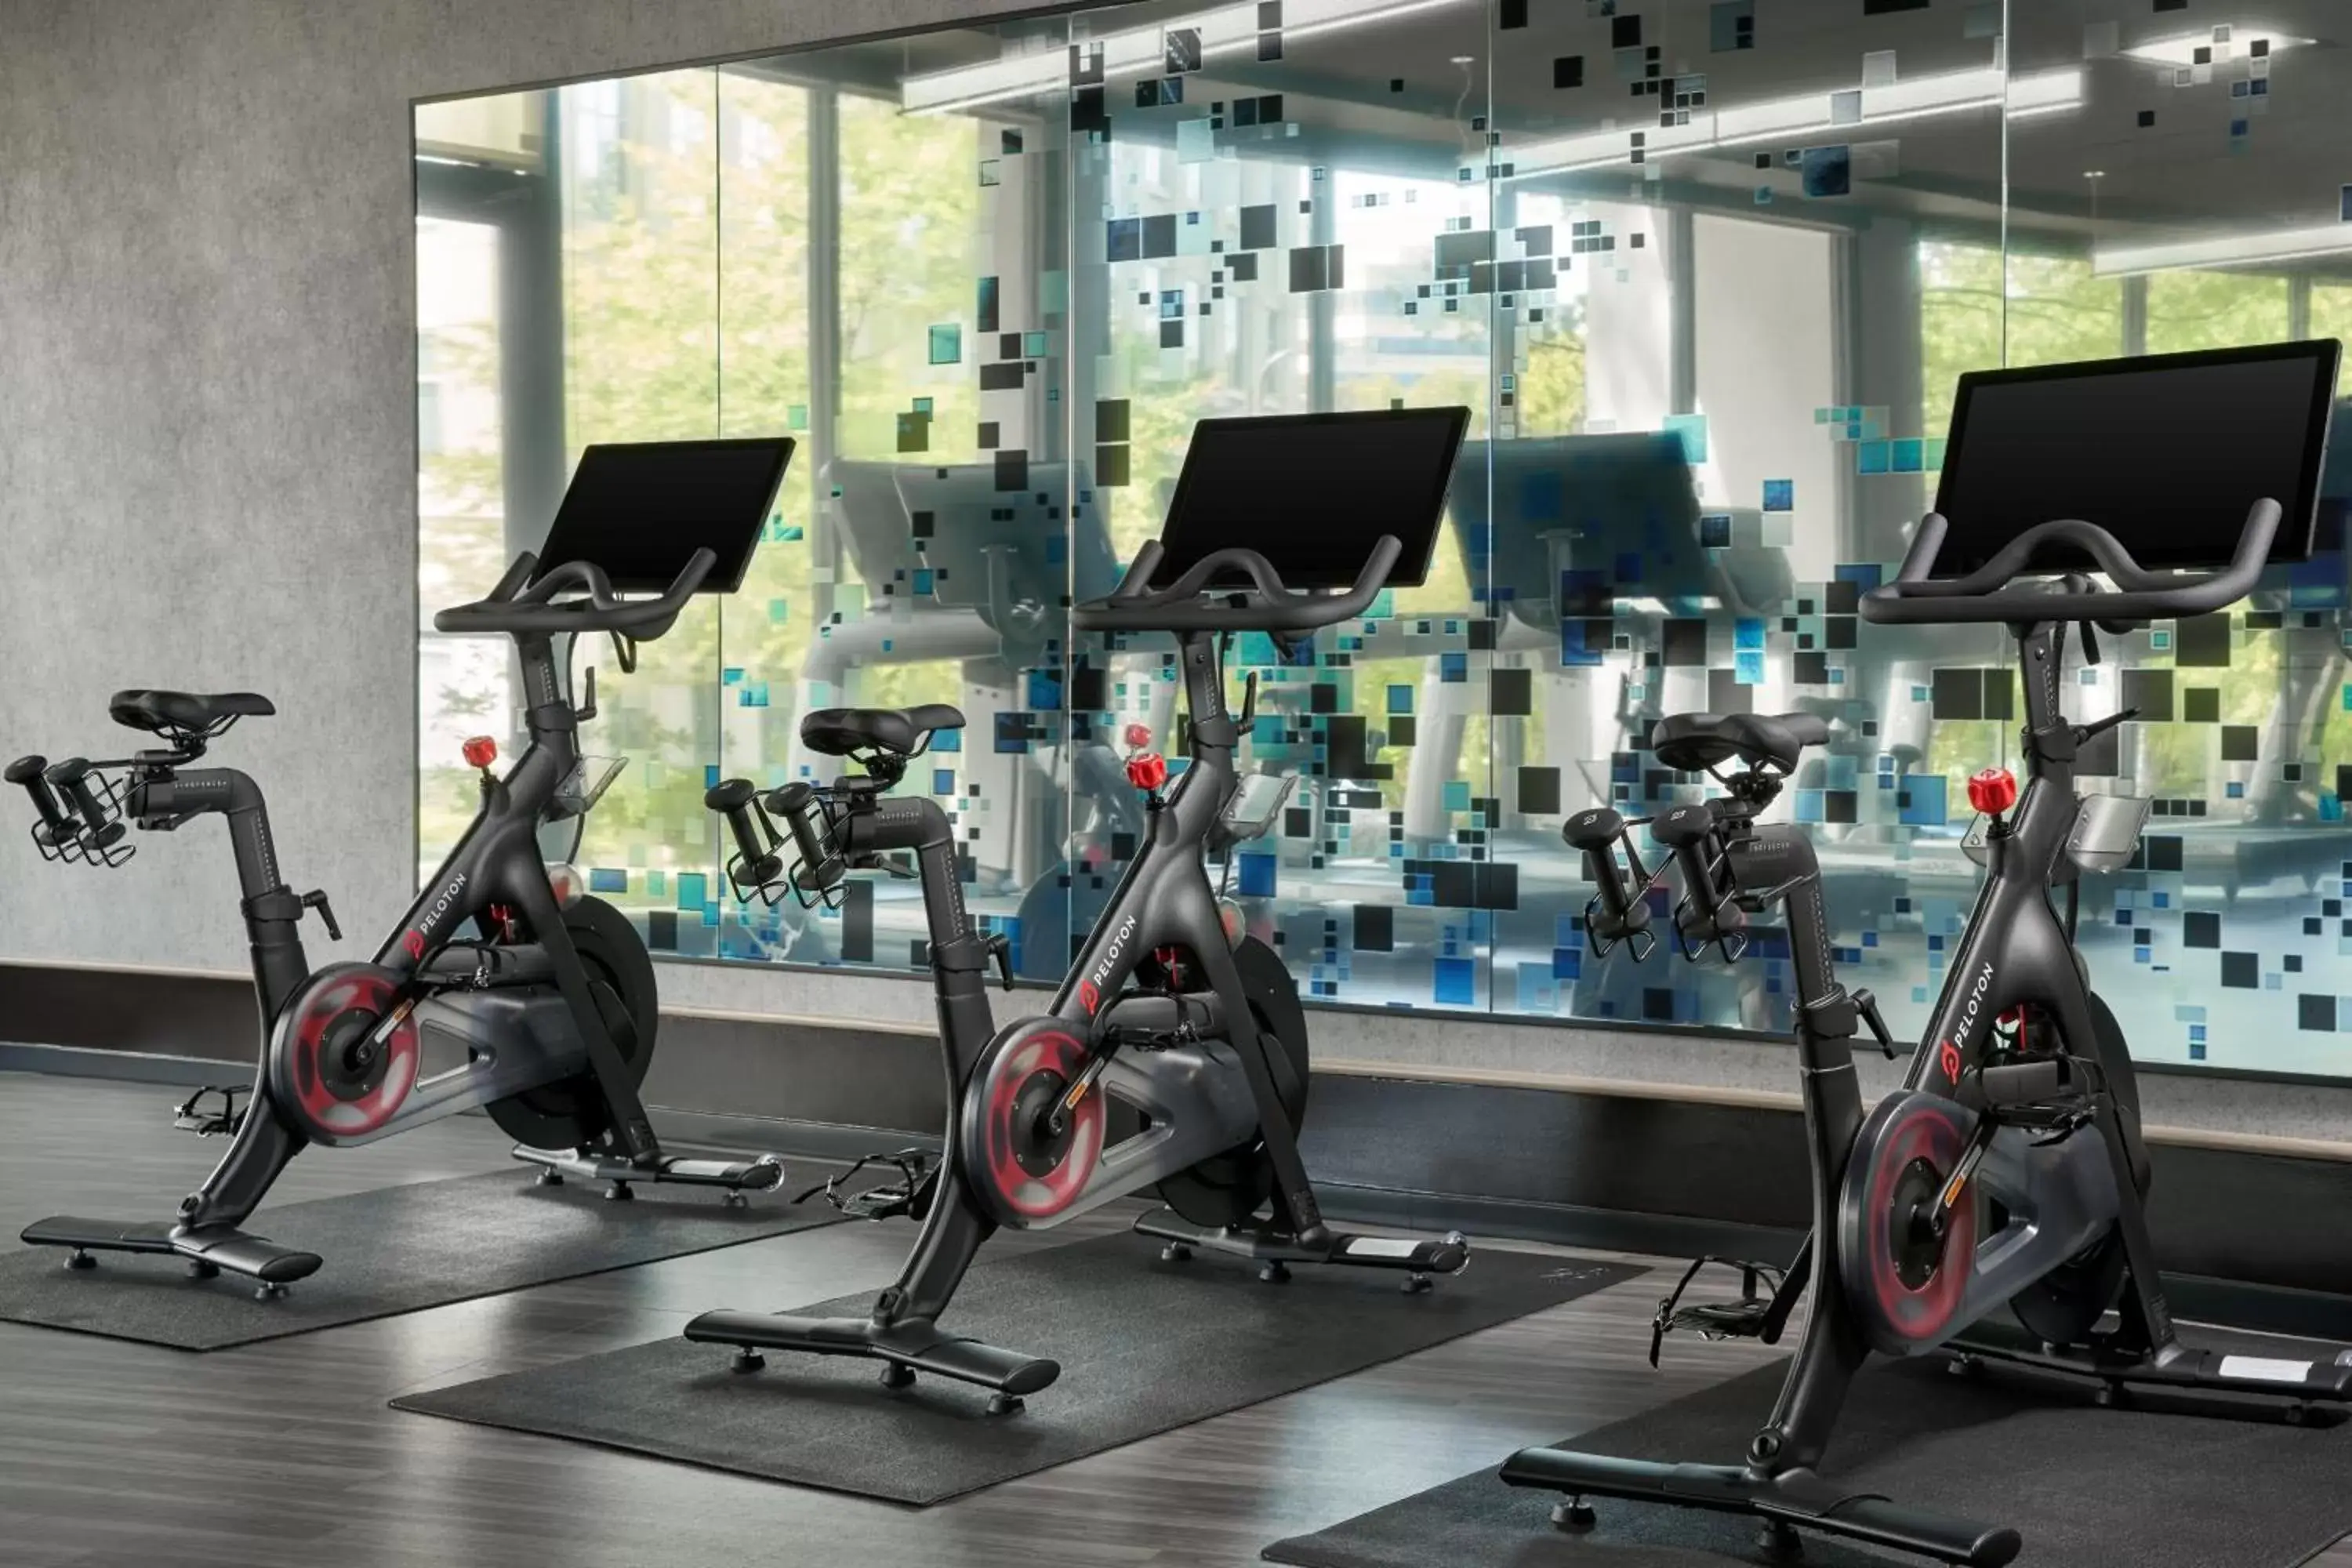 Fitness centre/facilities, Fitness Center/Facilities in Sheraton Reston